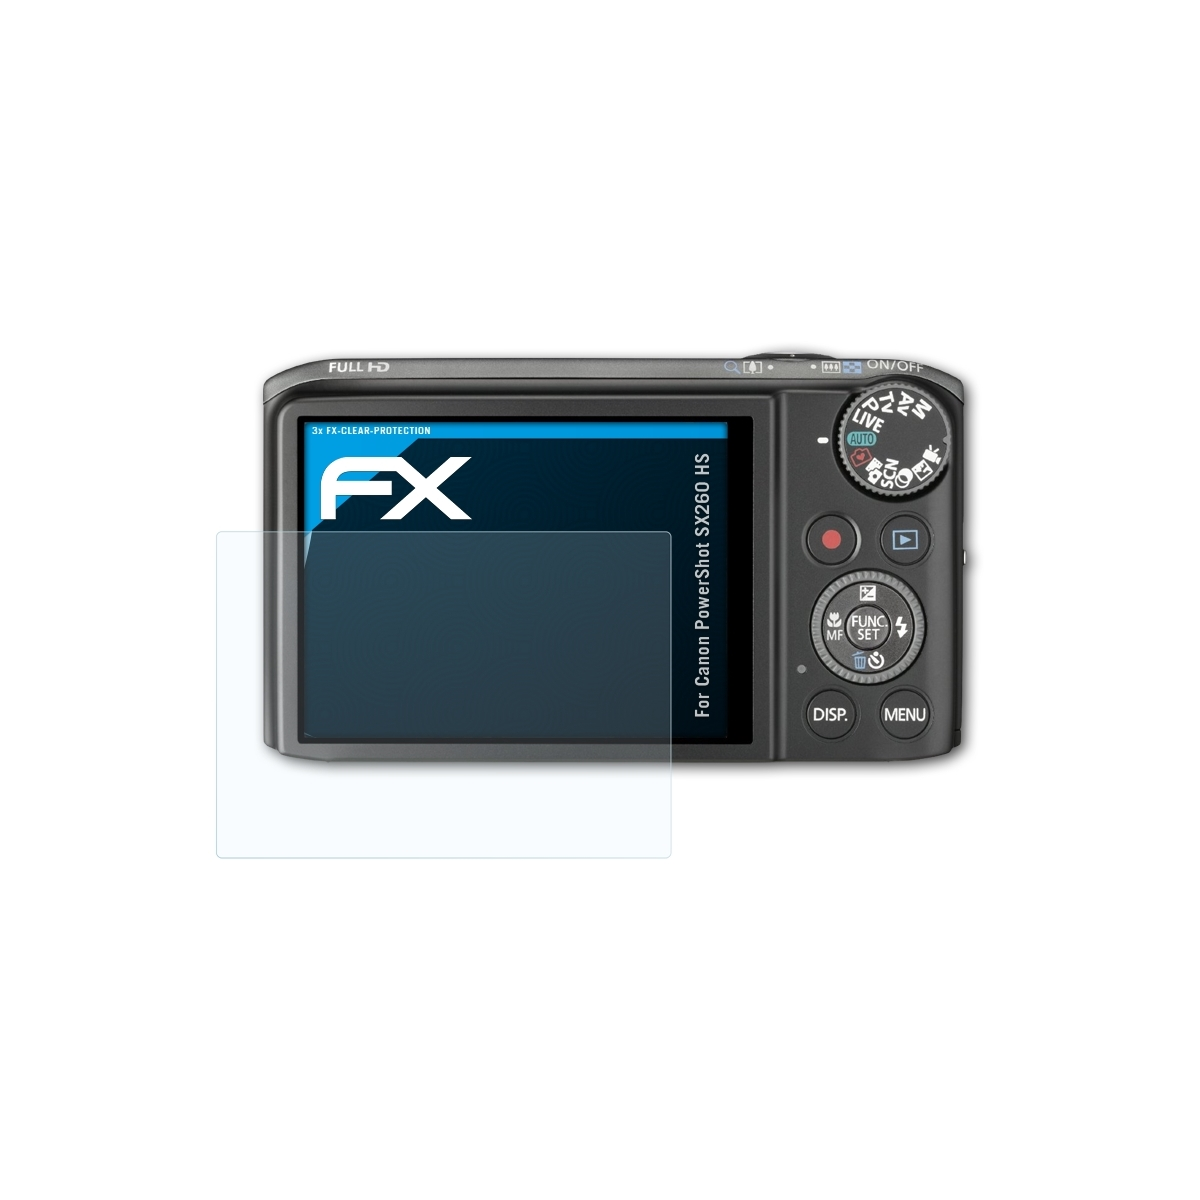 ATFOLIX 3x FX-Clear Displayschutz(für Canon SX260 PowerShot HS)